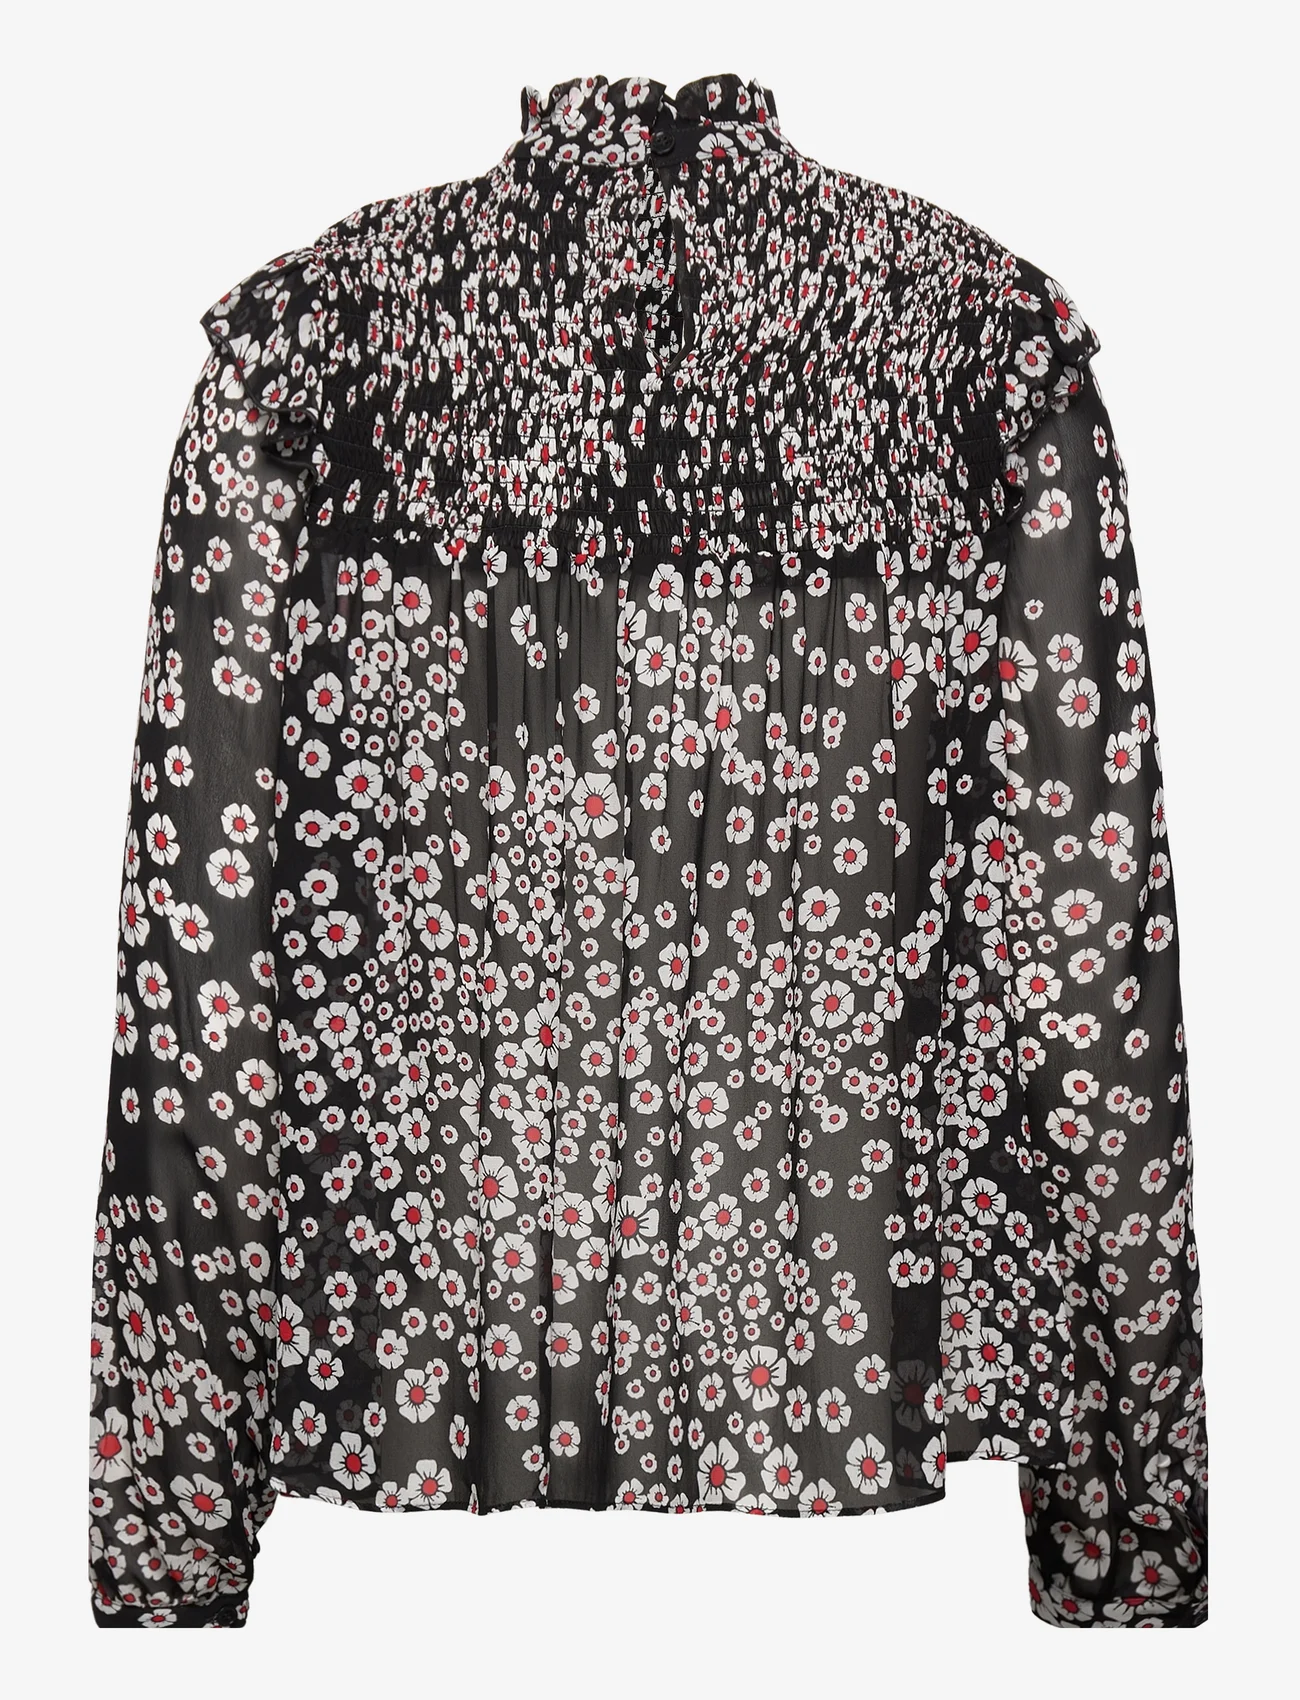 The Kooples - TOP - long-sleeved blouses - black / pink - 0